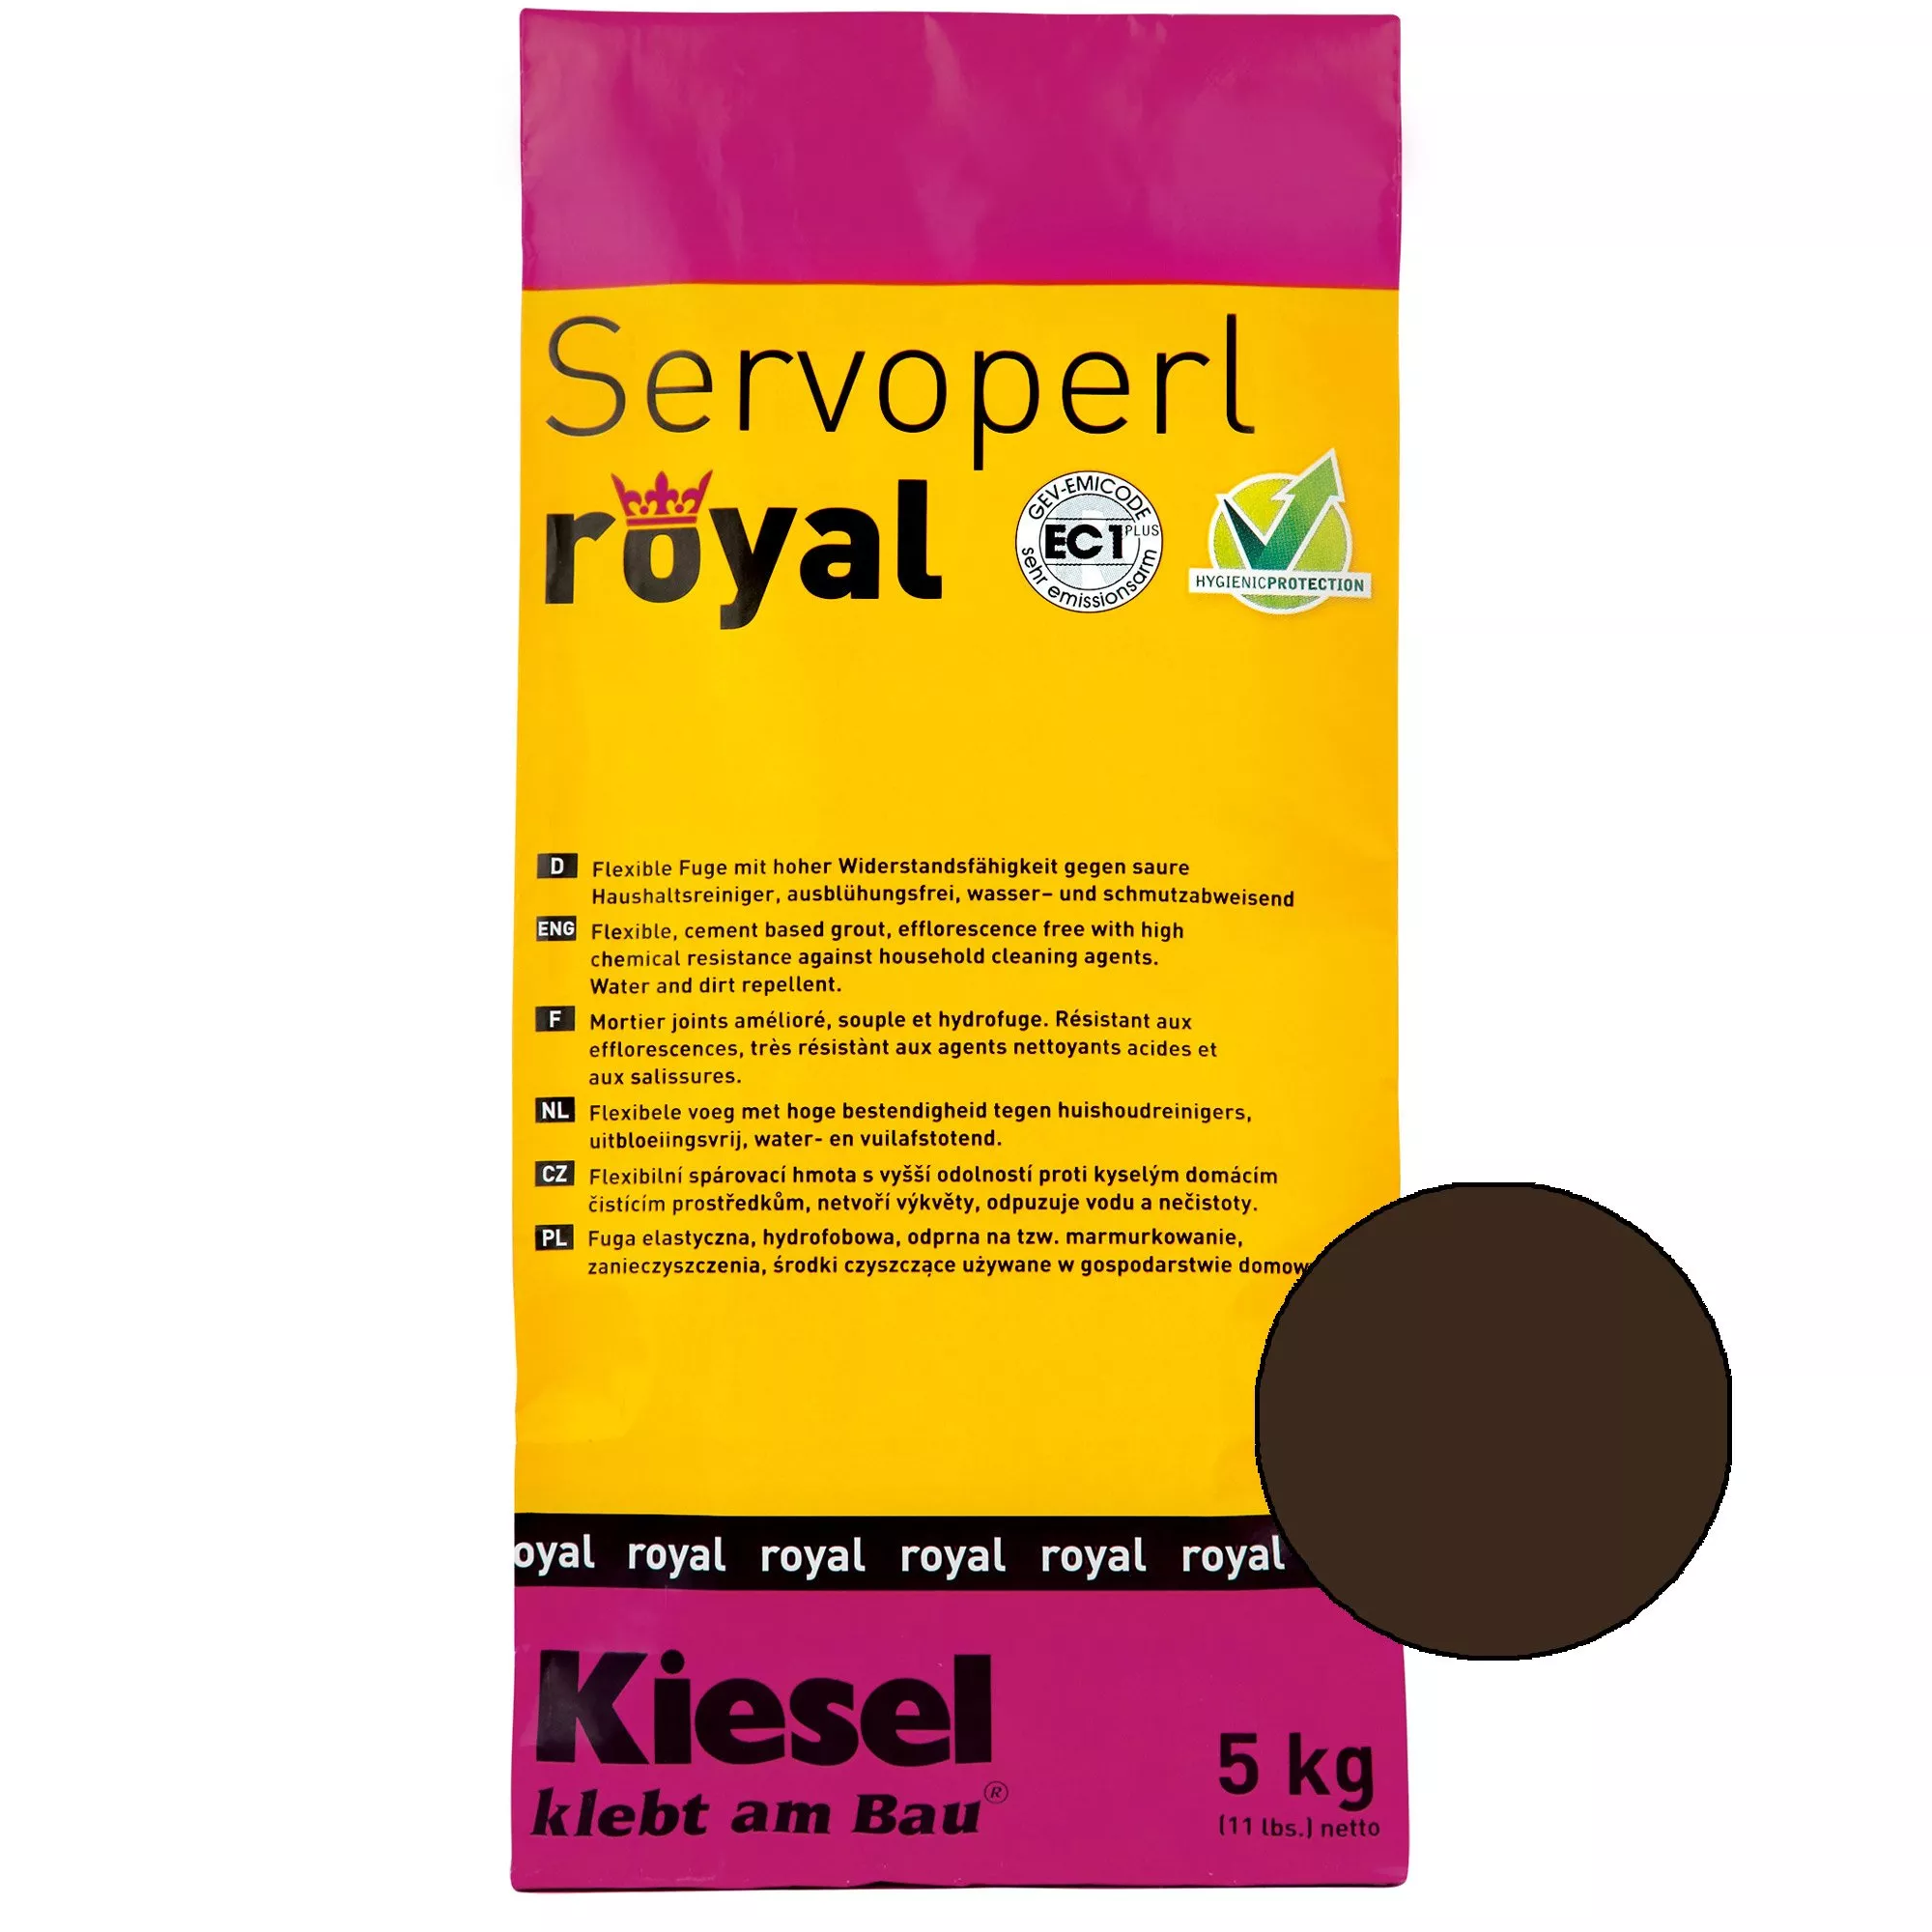 Kiesel Servoperl royal - Flexible, wasser- und schmutzabweisende Fuge (5KG Kaffee)